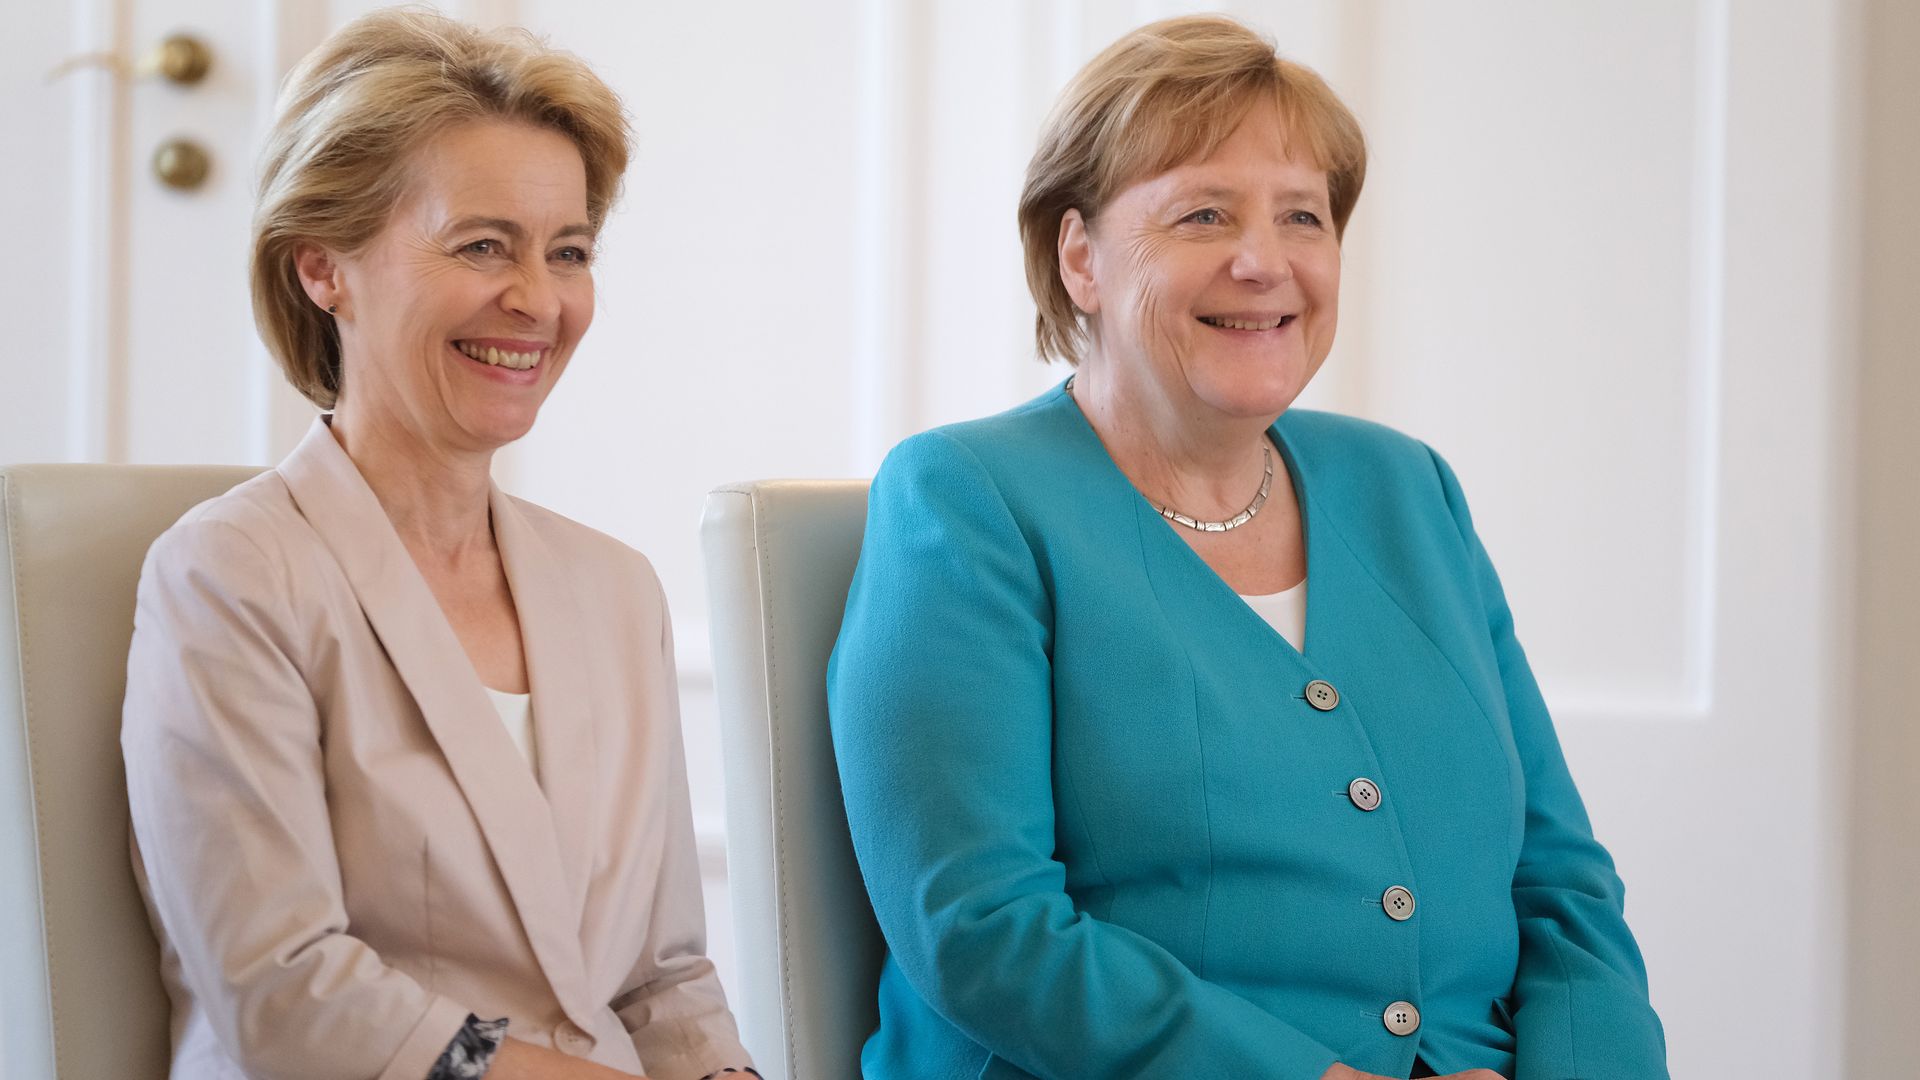 Ursula von der Leyen seated next to Angela Merkel